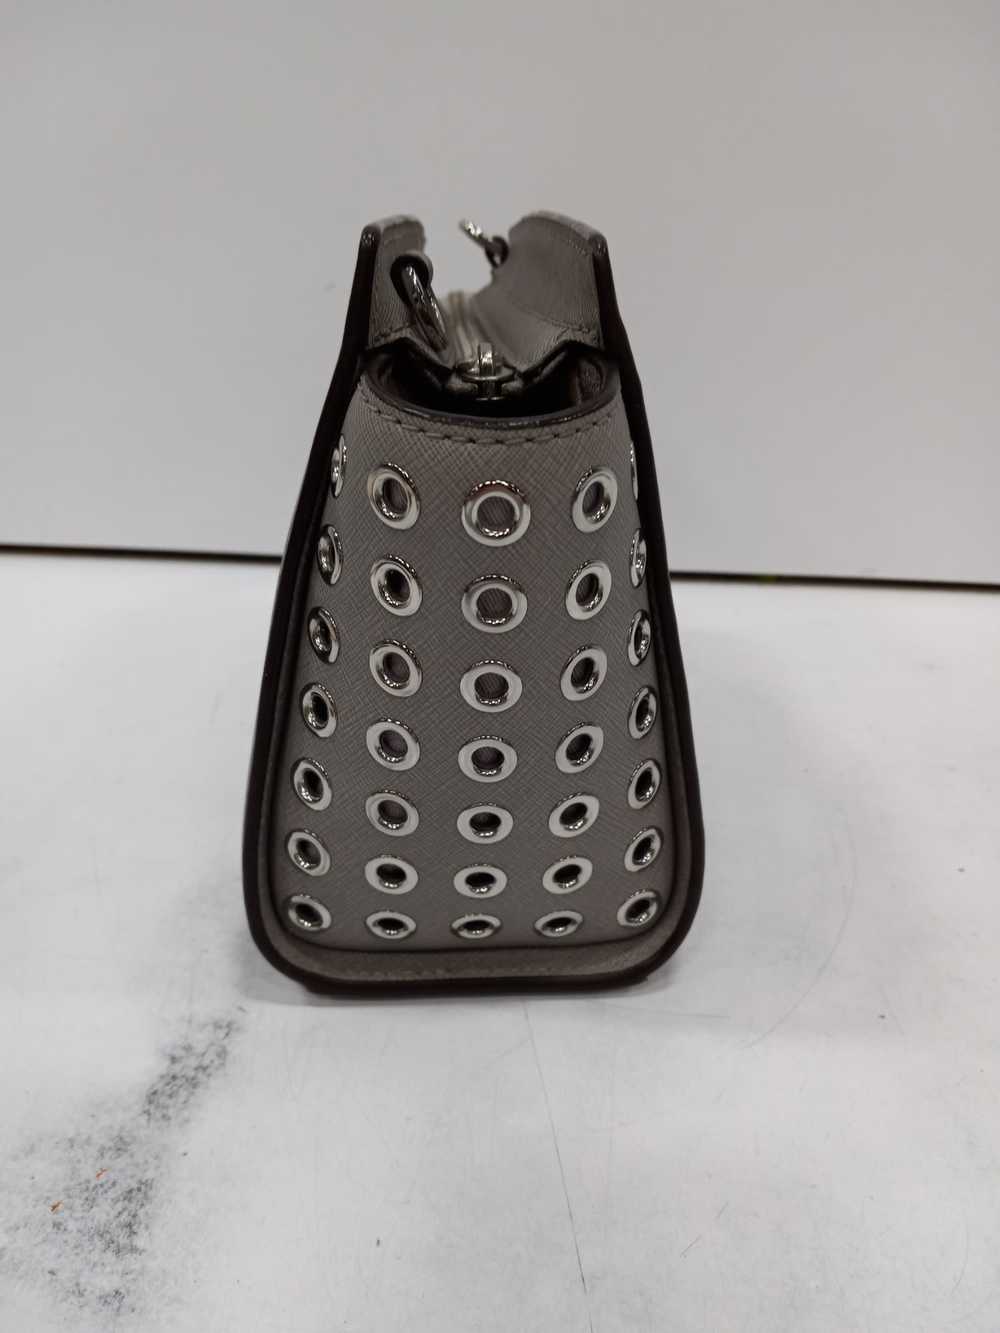 Michael Kors Selma Grey Leather Handbag - image 3